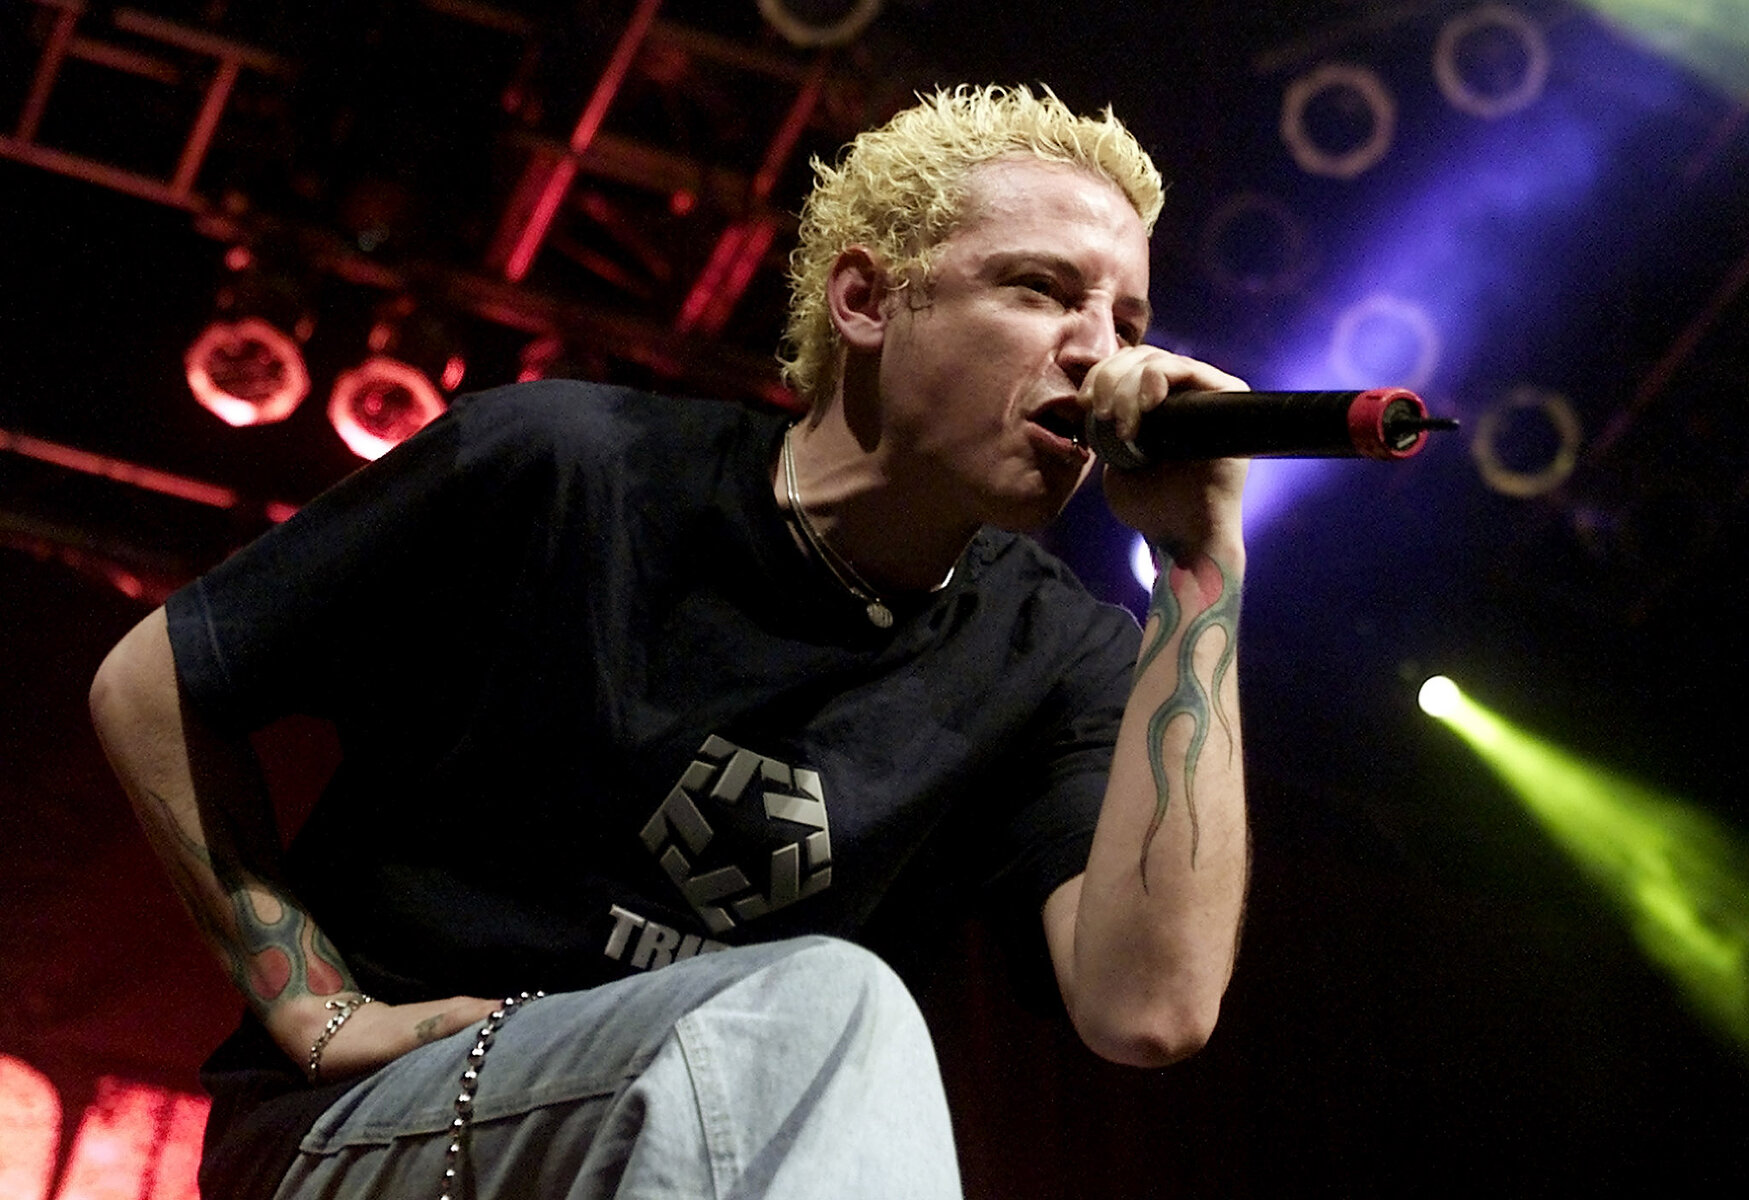 <p>Честер Беннингтон выступает 2 февраля 2001 года во время шоу Linkin park в Доме Блюза в отеле-казино &laquo;Мандалай Бей&raquo;&nbsp;в Лас-Вегасе. Группа гастролировала в поддержку своего платинового дебютного альбома&nbsp;&laquo;Hybrid Theory&raquo;.</p>

<p>&nbsp;</p>

<p>&nbsp;</p>